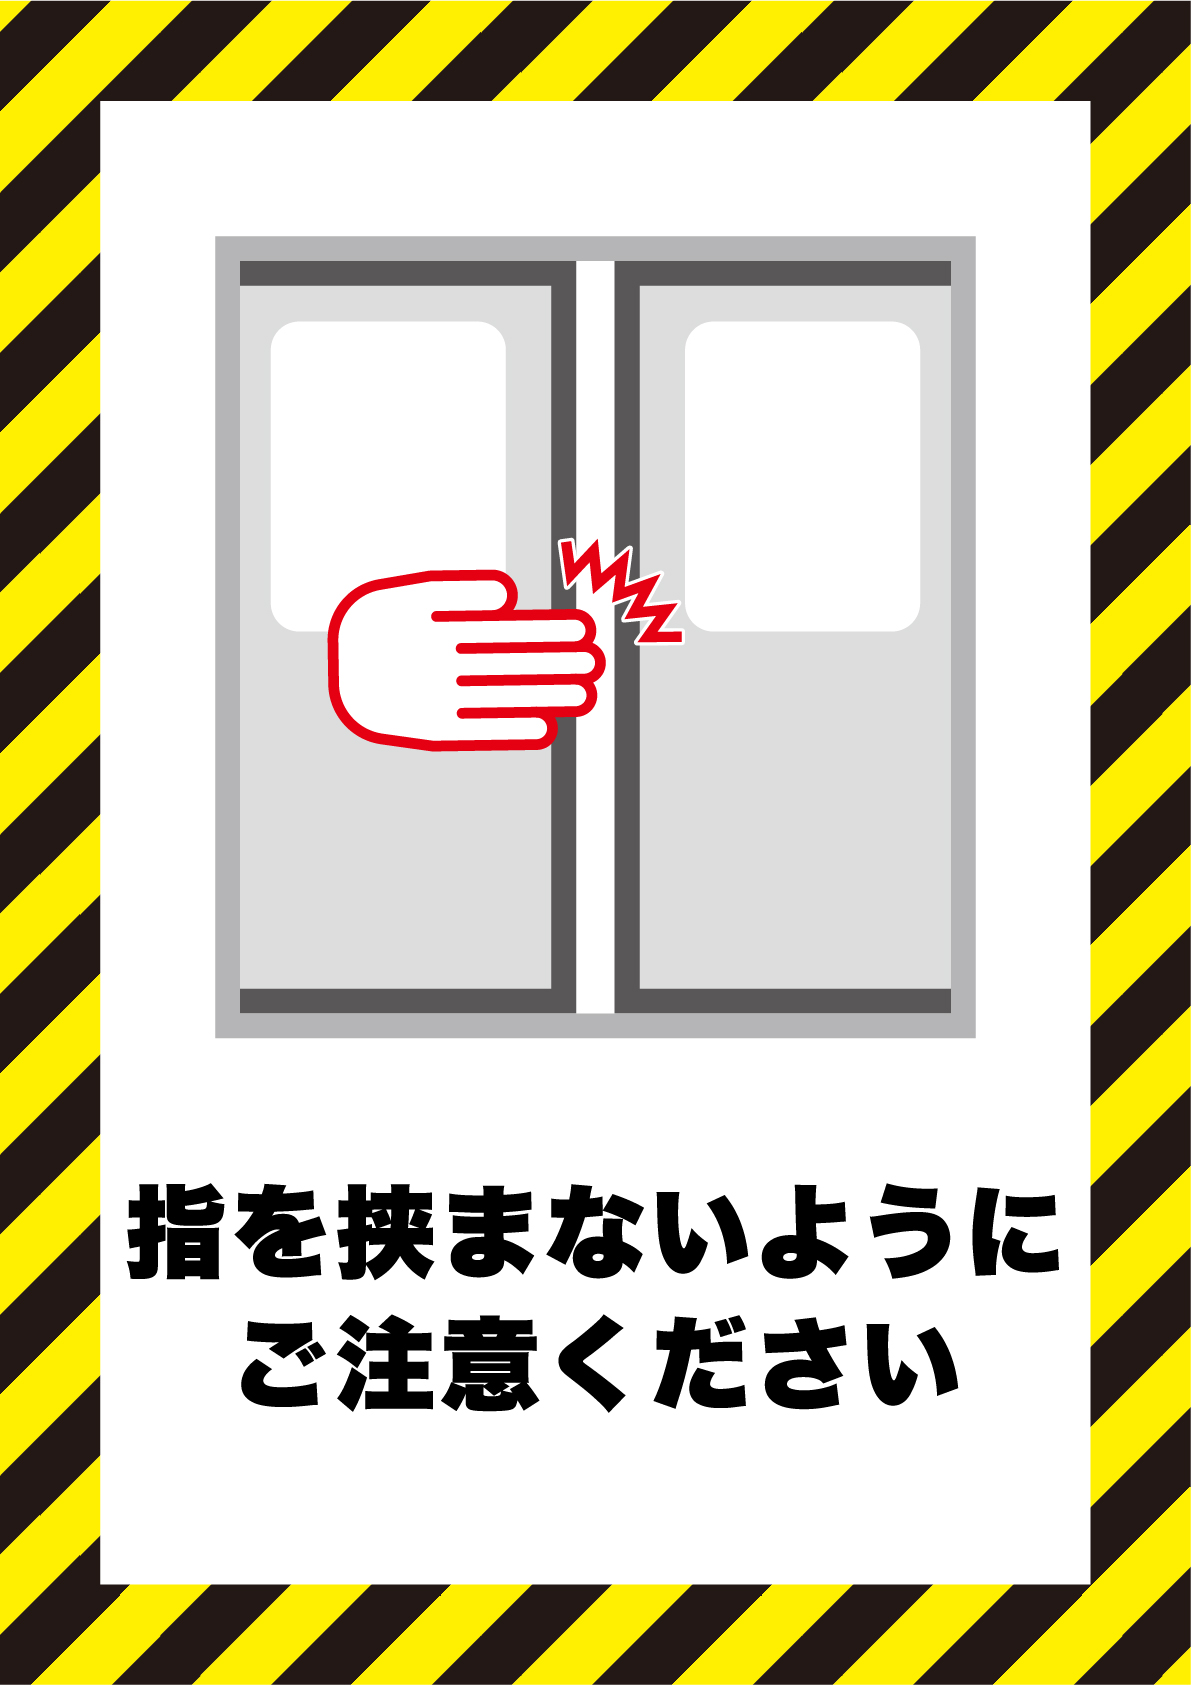 ドアに指を挟まないようにご注意くださいの張り紙